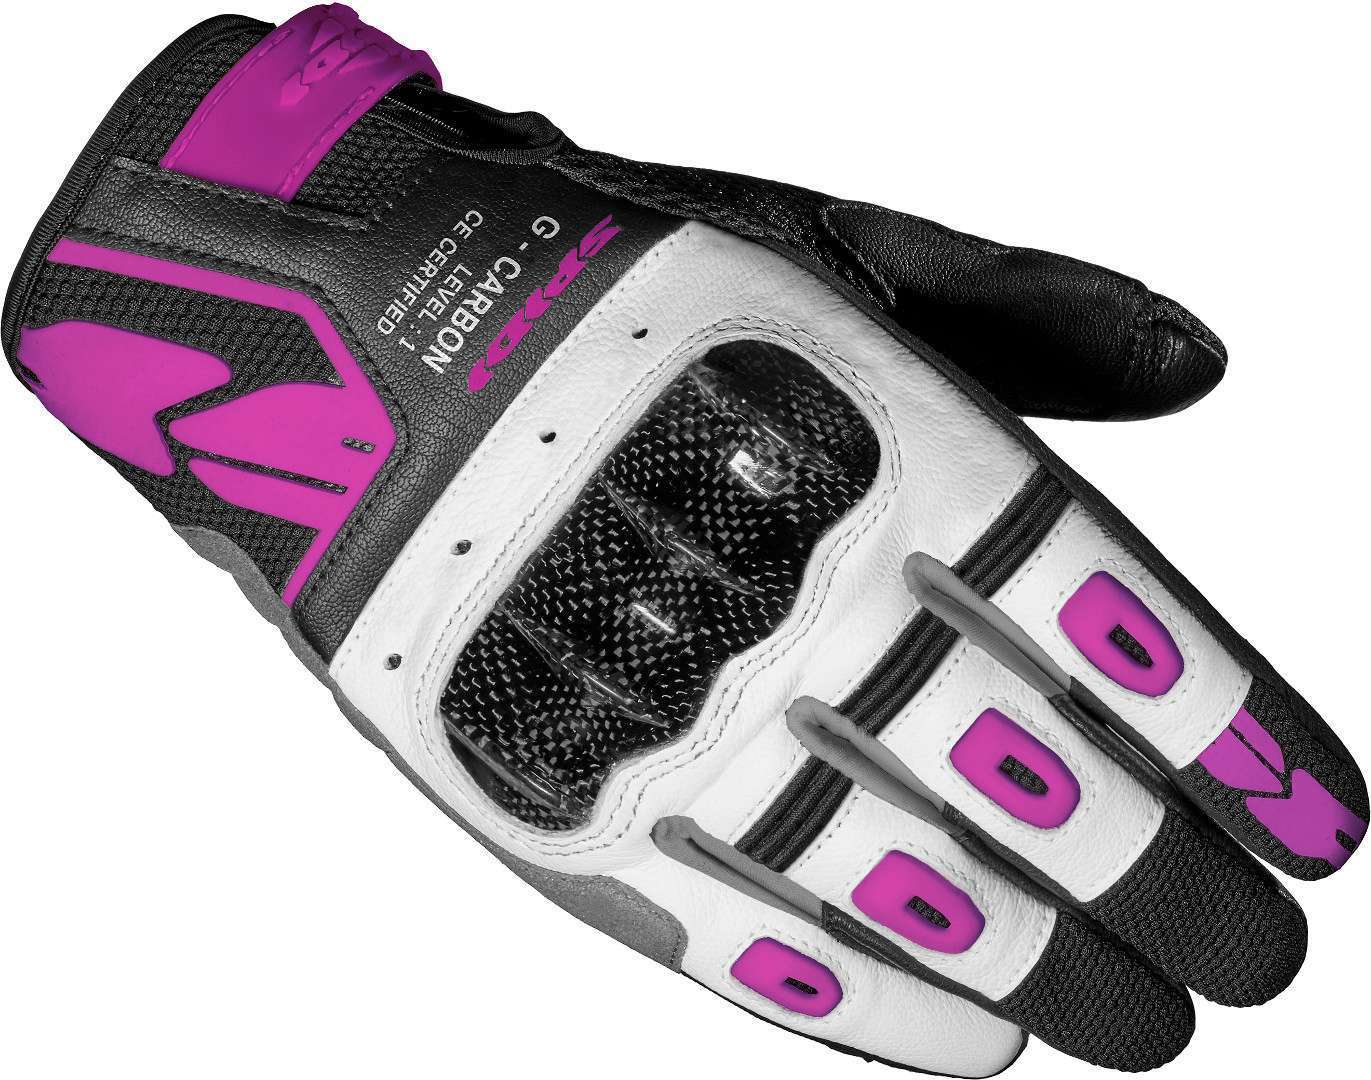 Spidi G-Carbon Ladies Motorcycle Gloves  - Black White Pink